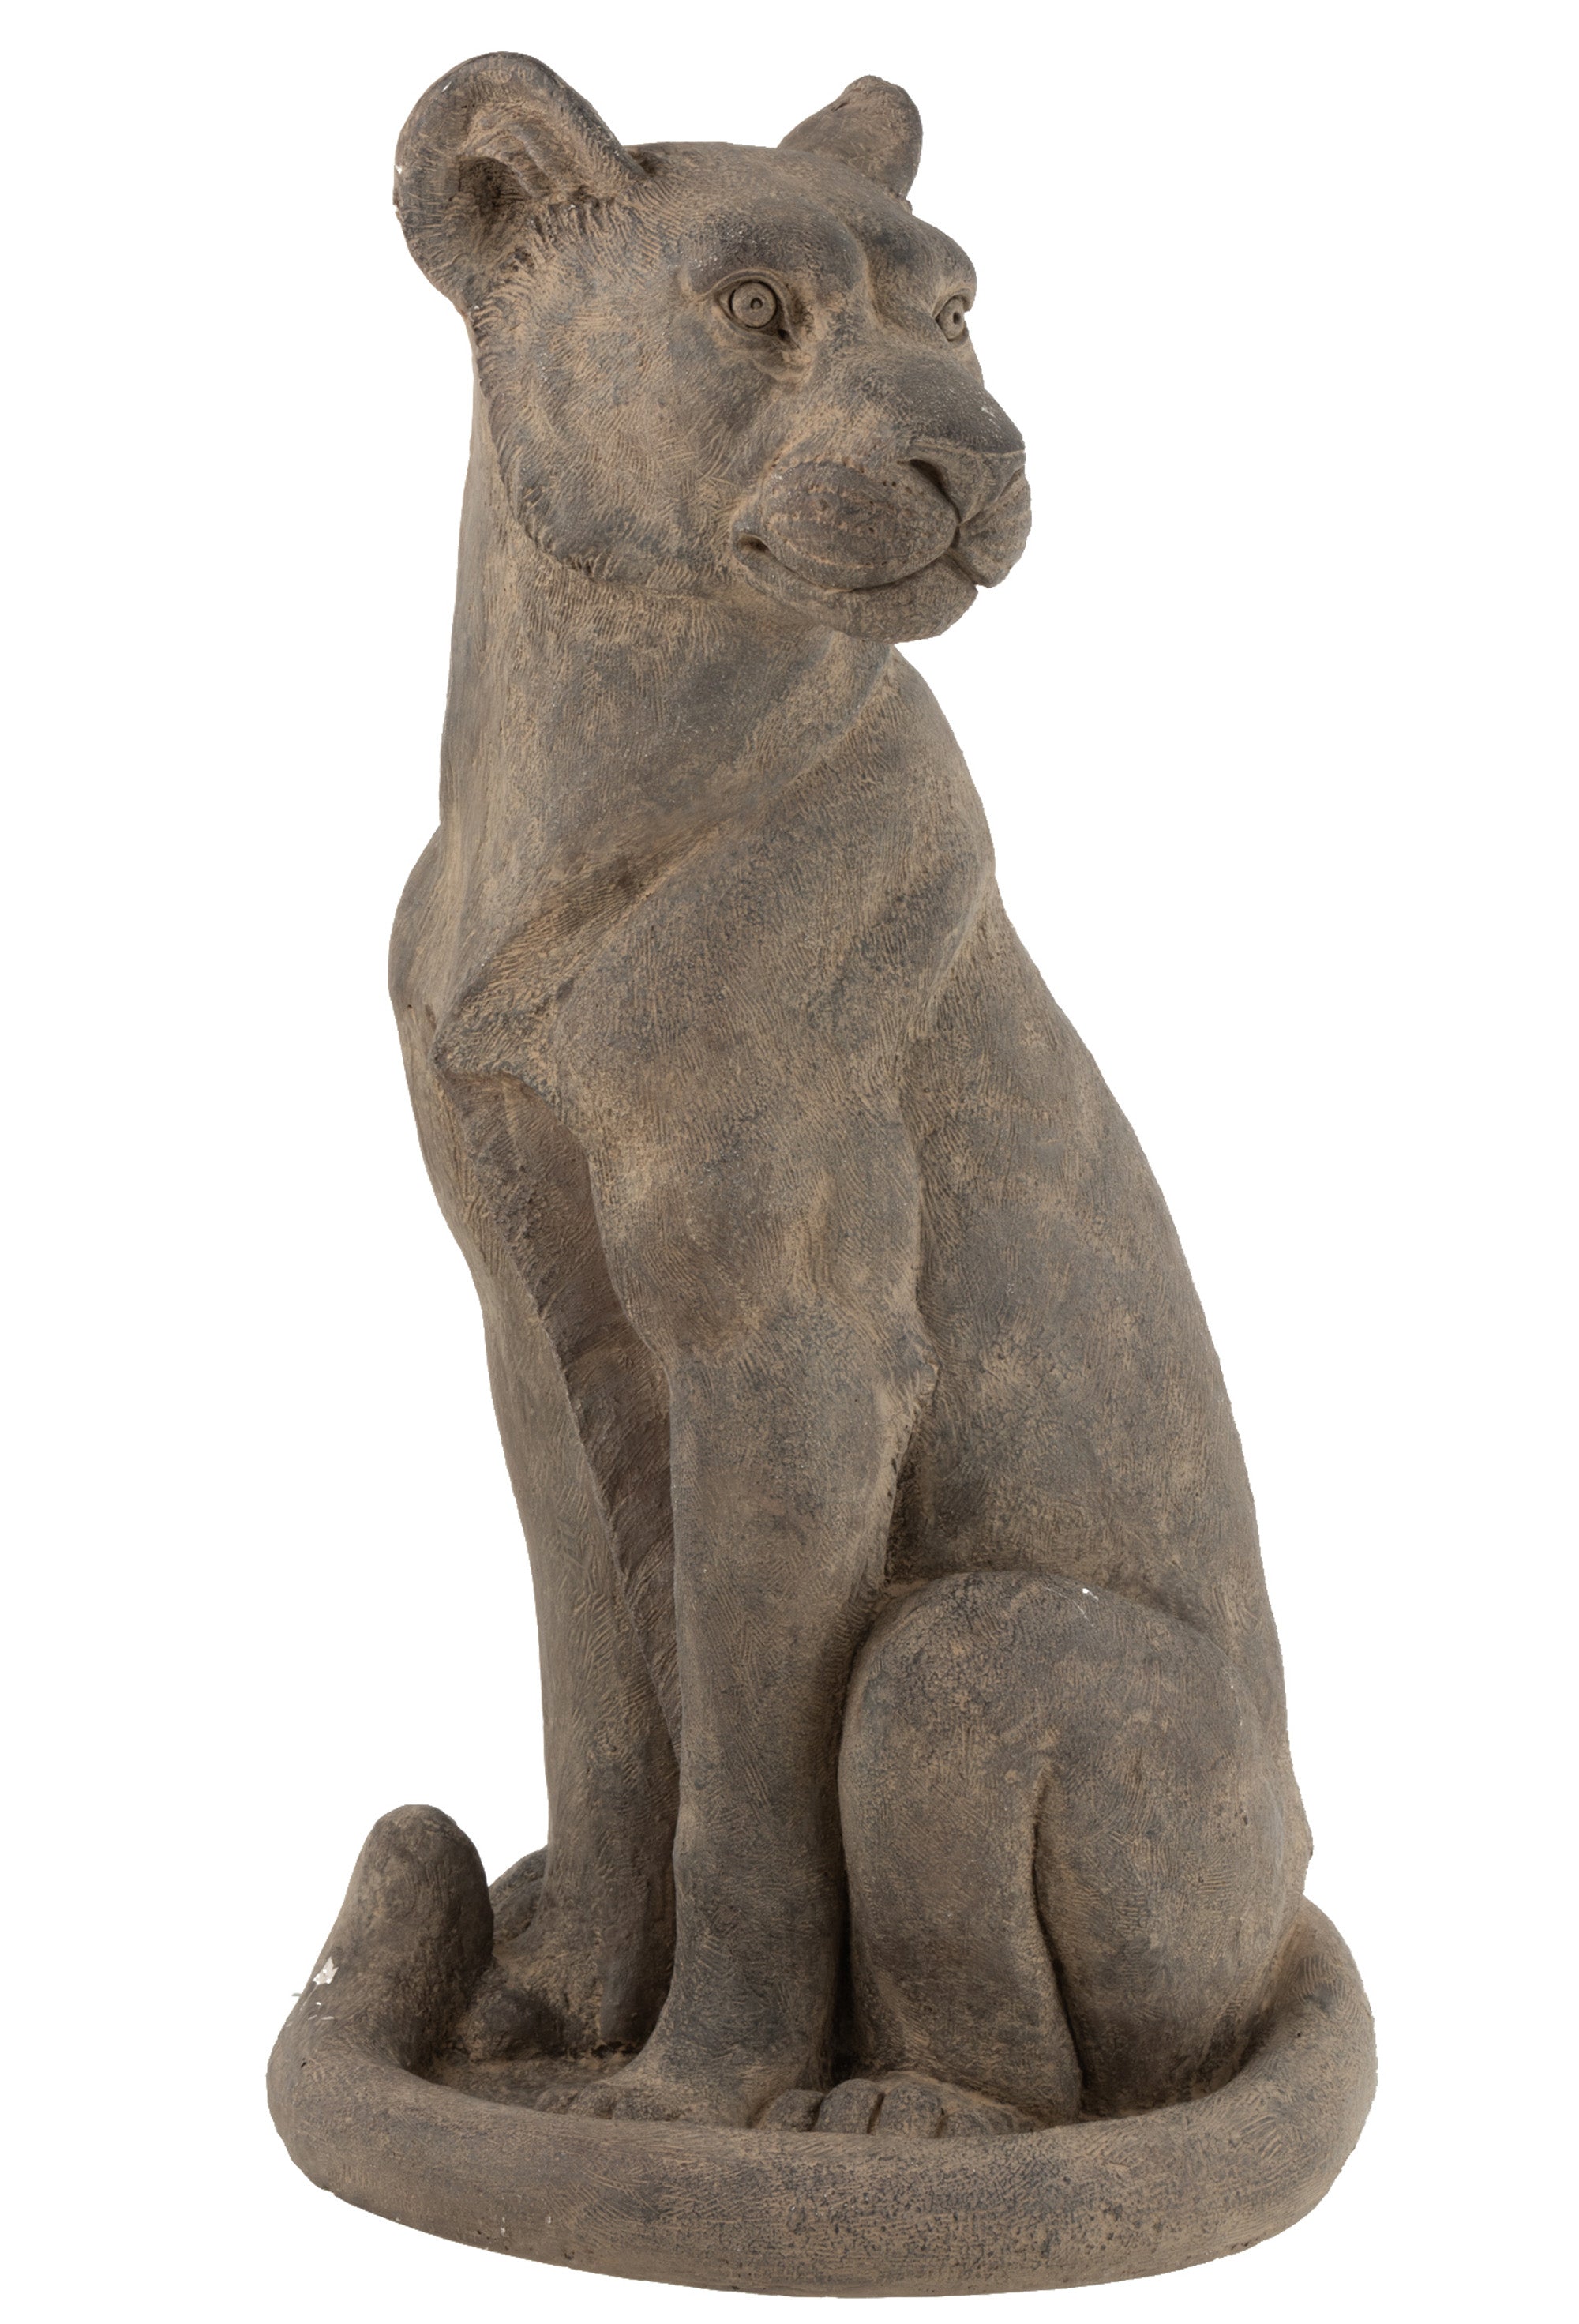 Ein großer, sitzender Panther aus grauem Ton, als Deko Figur, den Schwanz vor dem Körper gelegt.